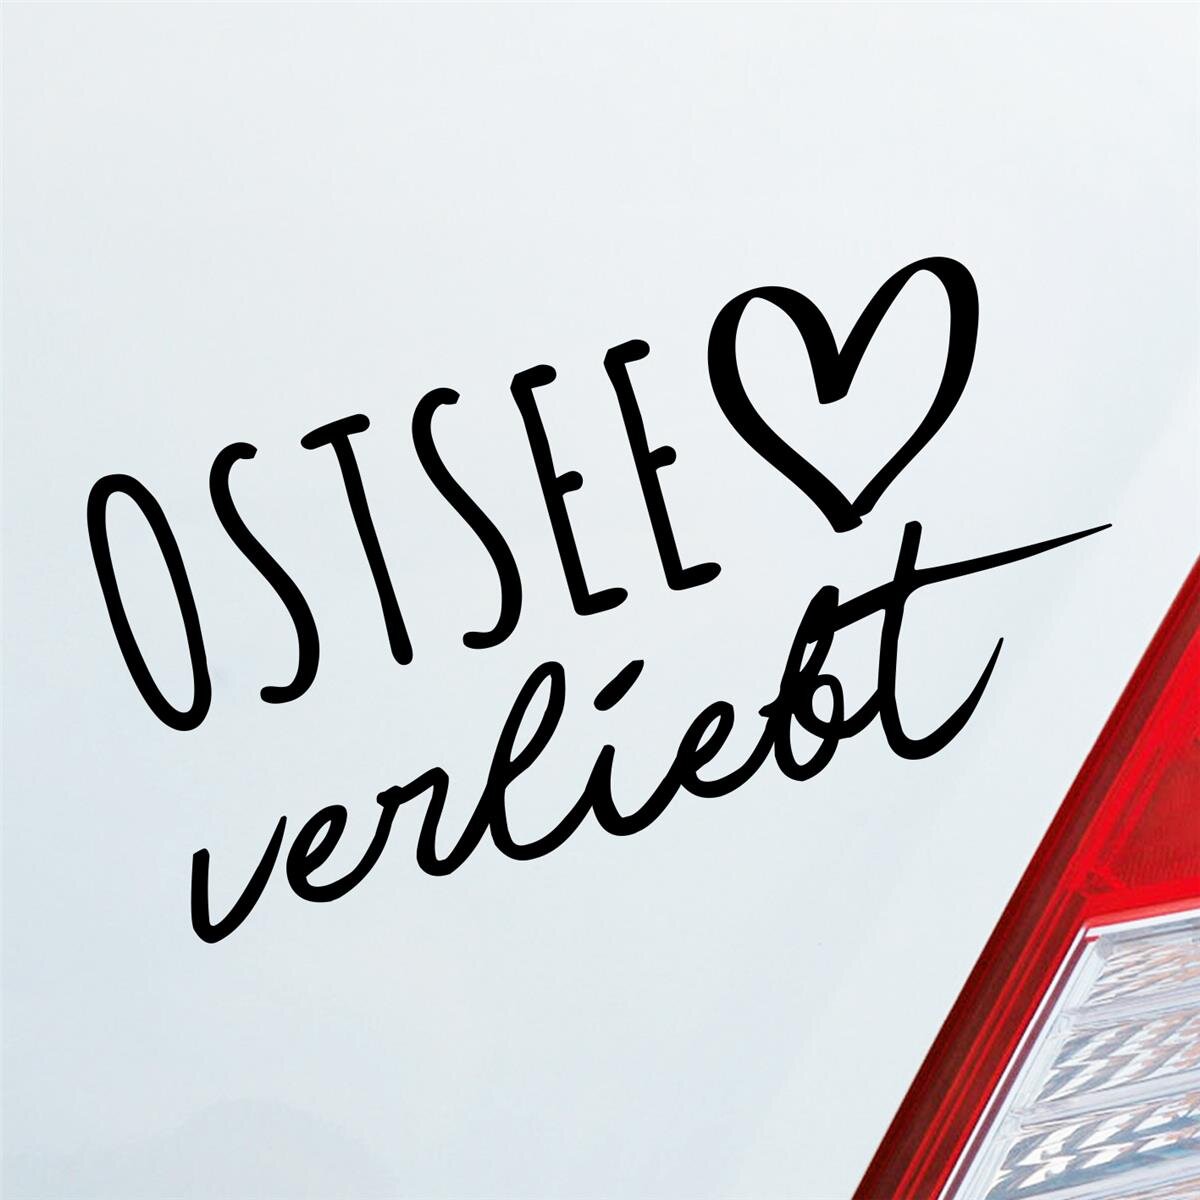 19 x 6 cm Autoaufkleber Sticker Auto Aufkleber in deiner Wunschfarbe Ostsee Herz Puls See Sea Osten East Sticker Liebe Love ca 